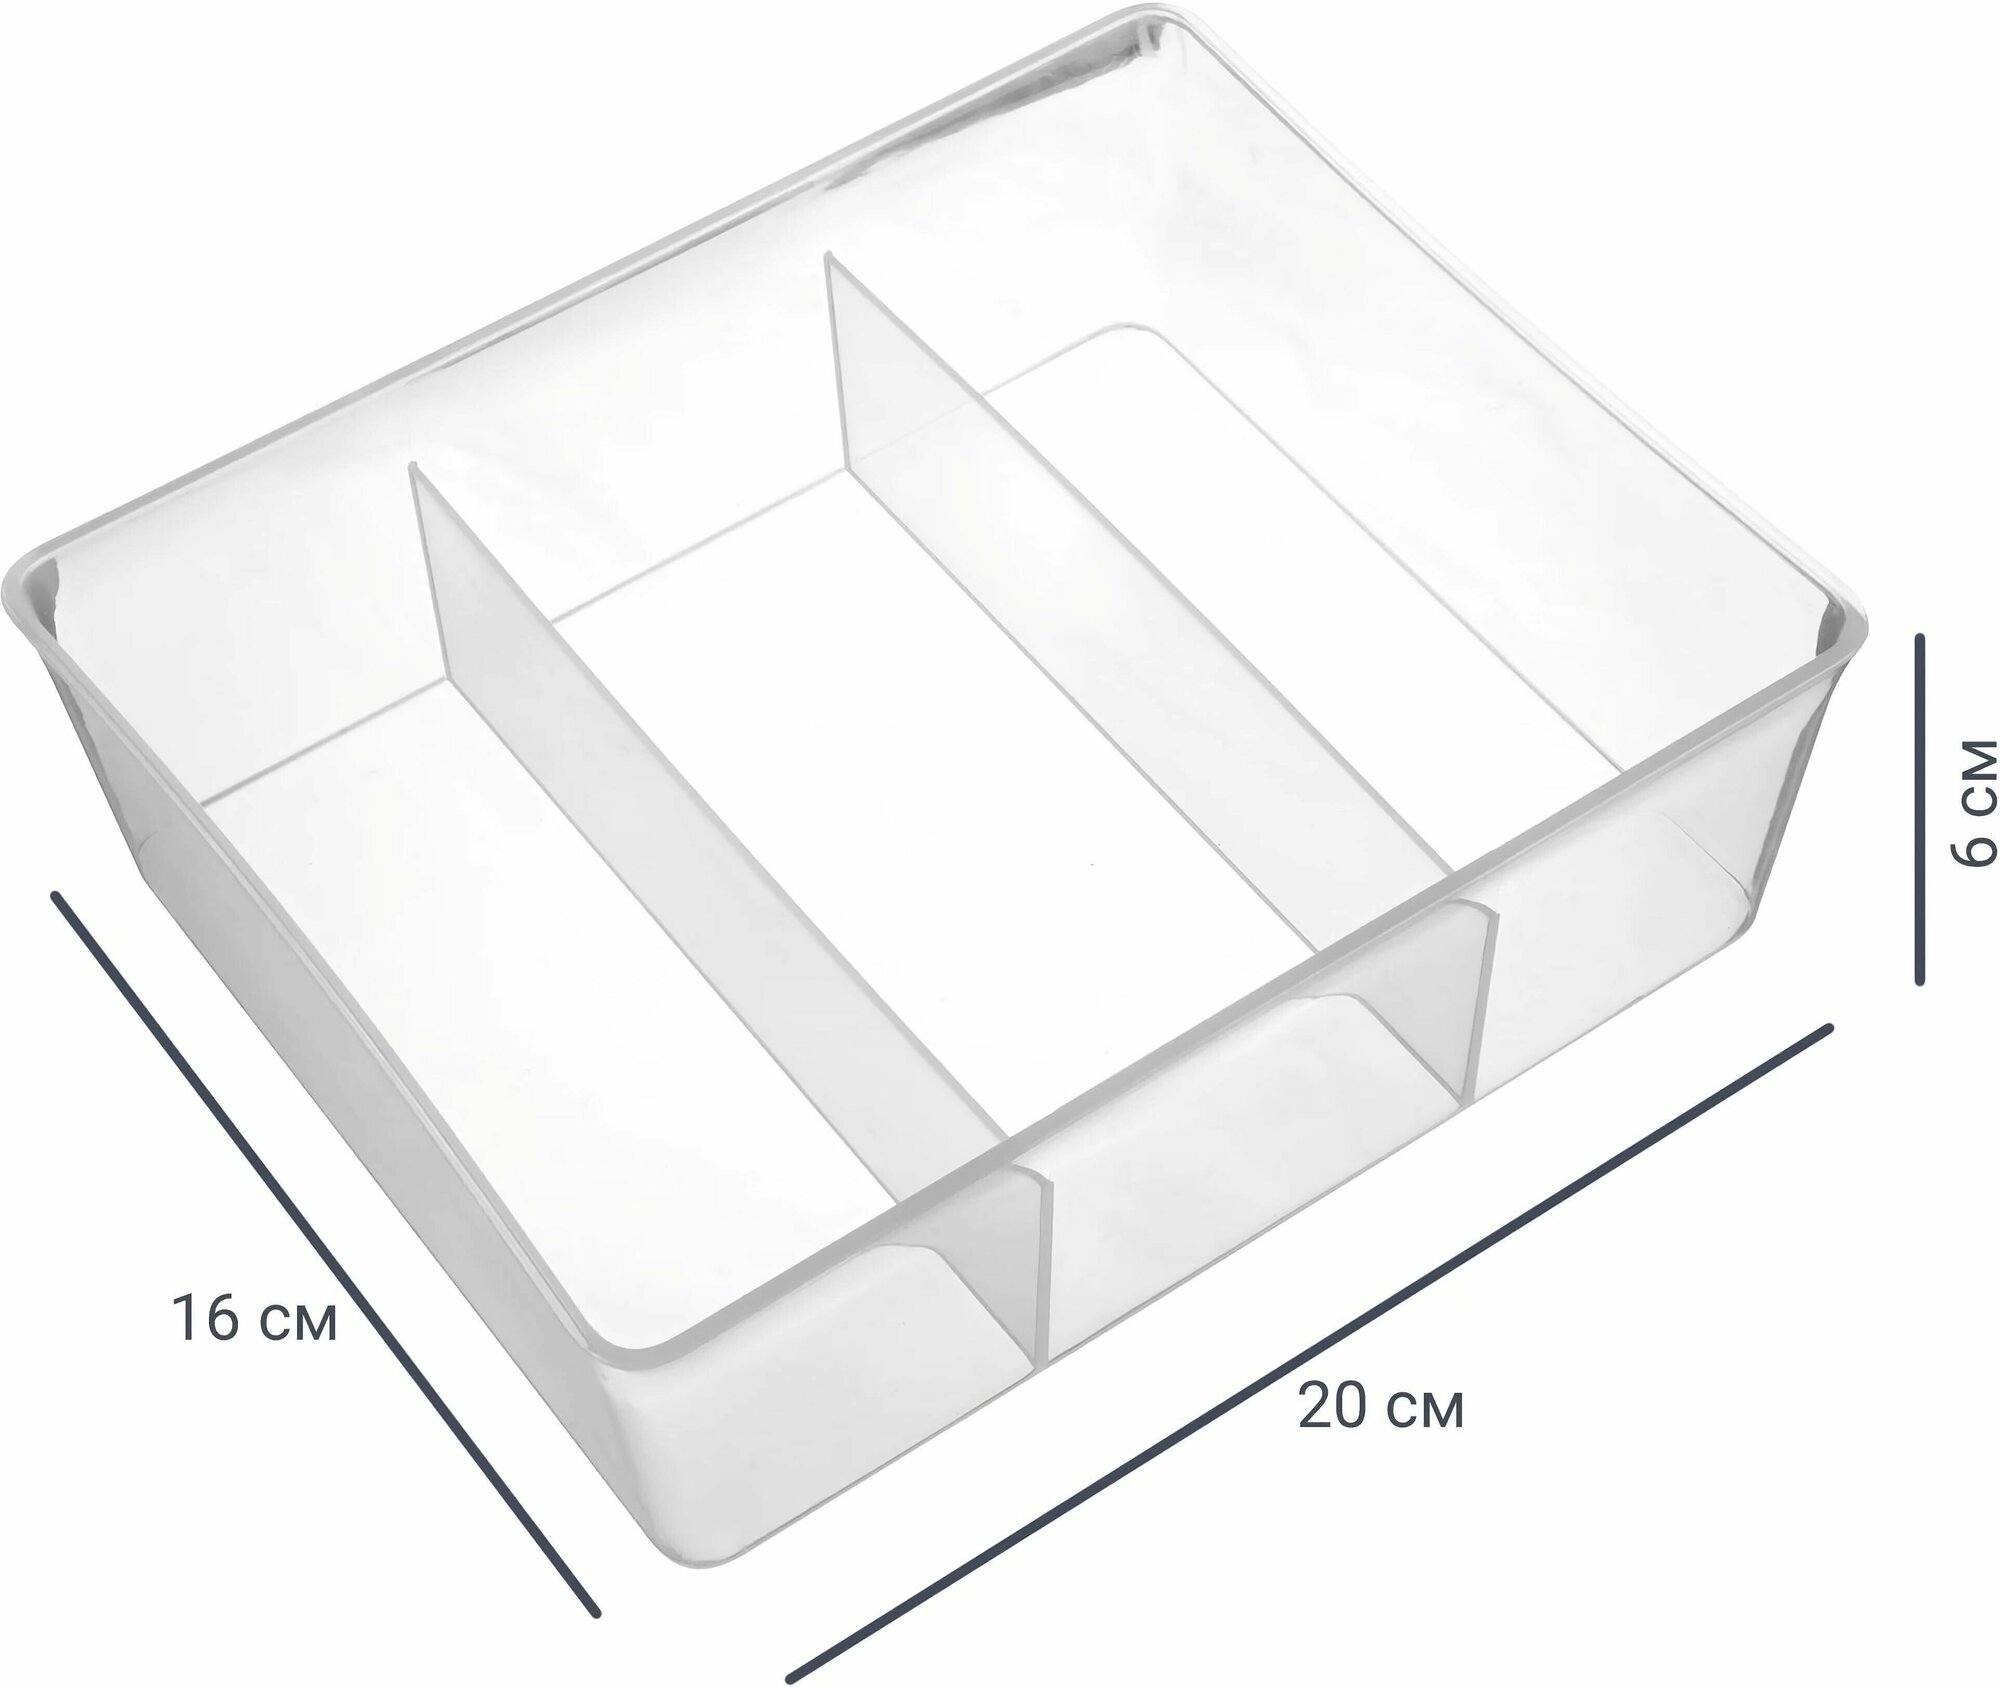 Лоток, 20x16x6 см: прозрачный, позволяет организовать пространство ящика для столовых приборов